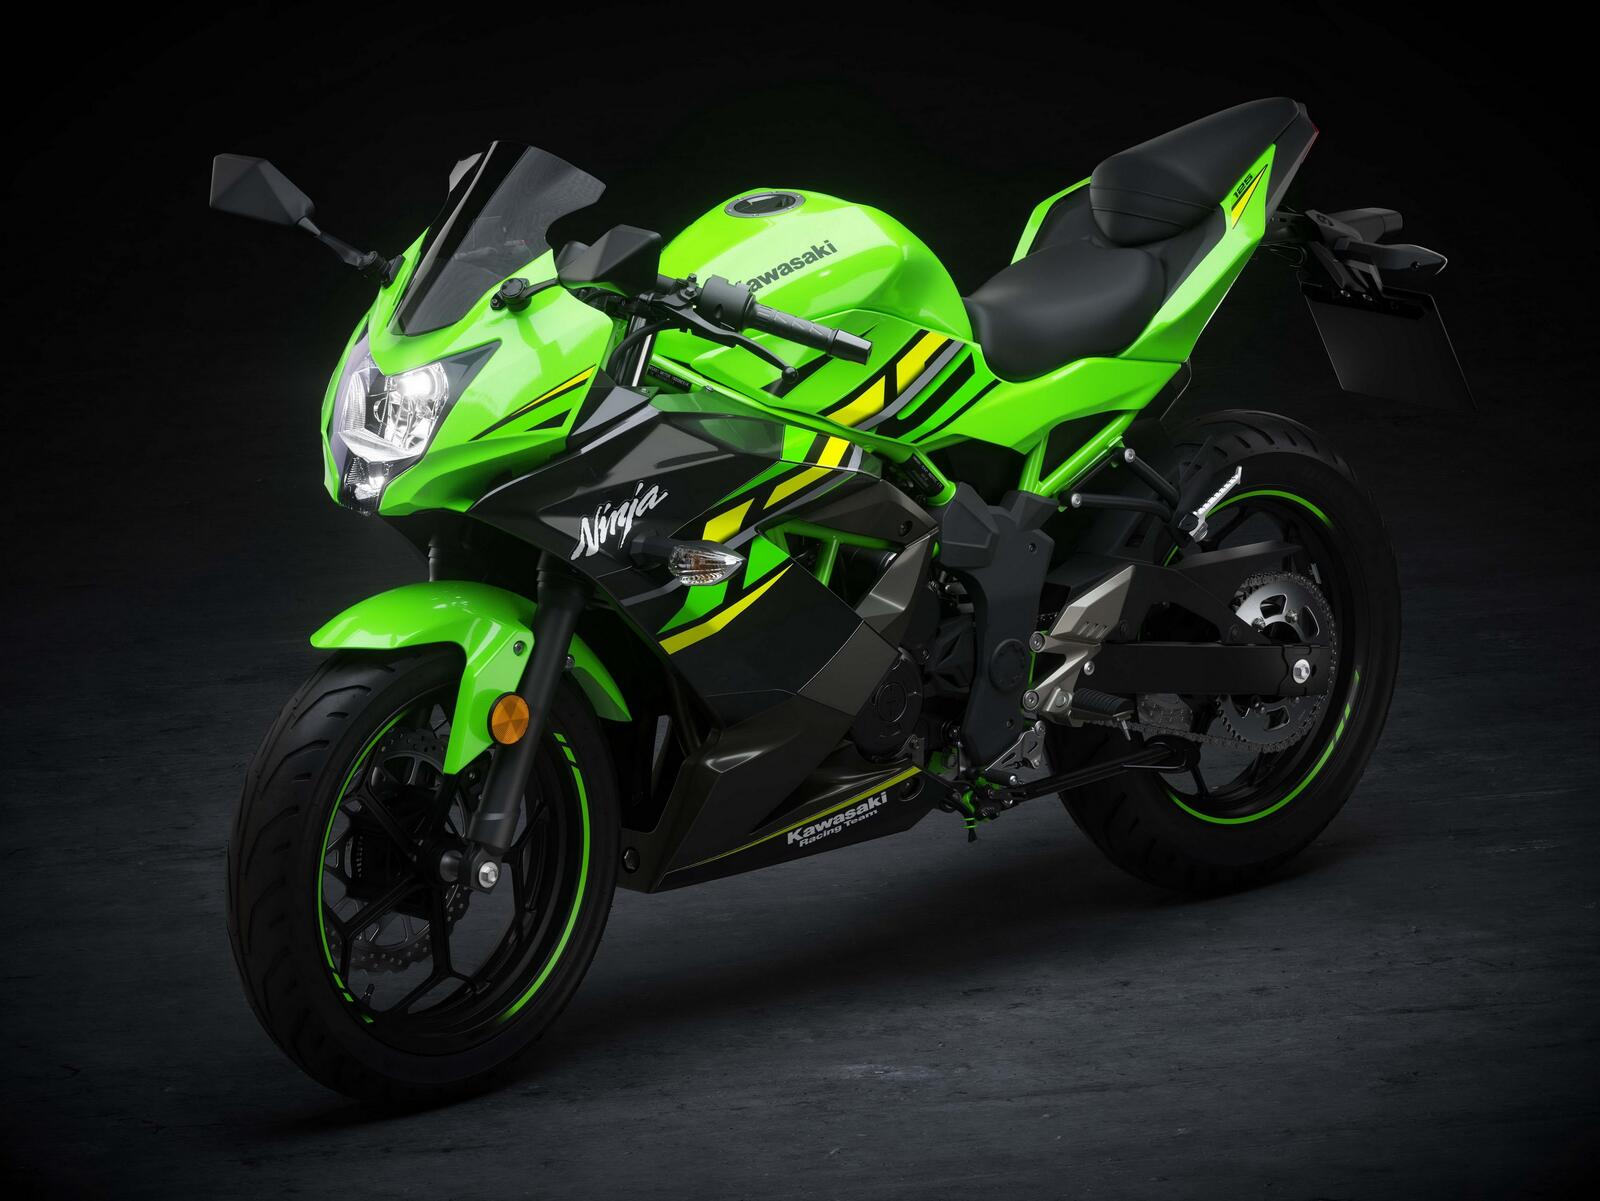 Free photo A bright green motorcycle Ninja Kawasaki